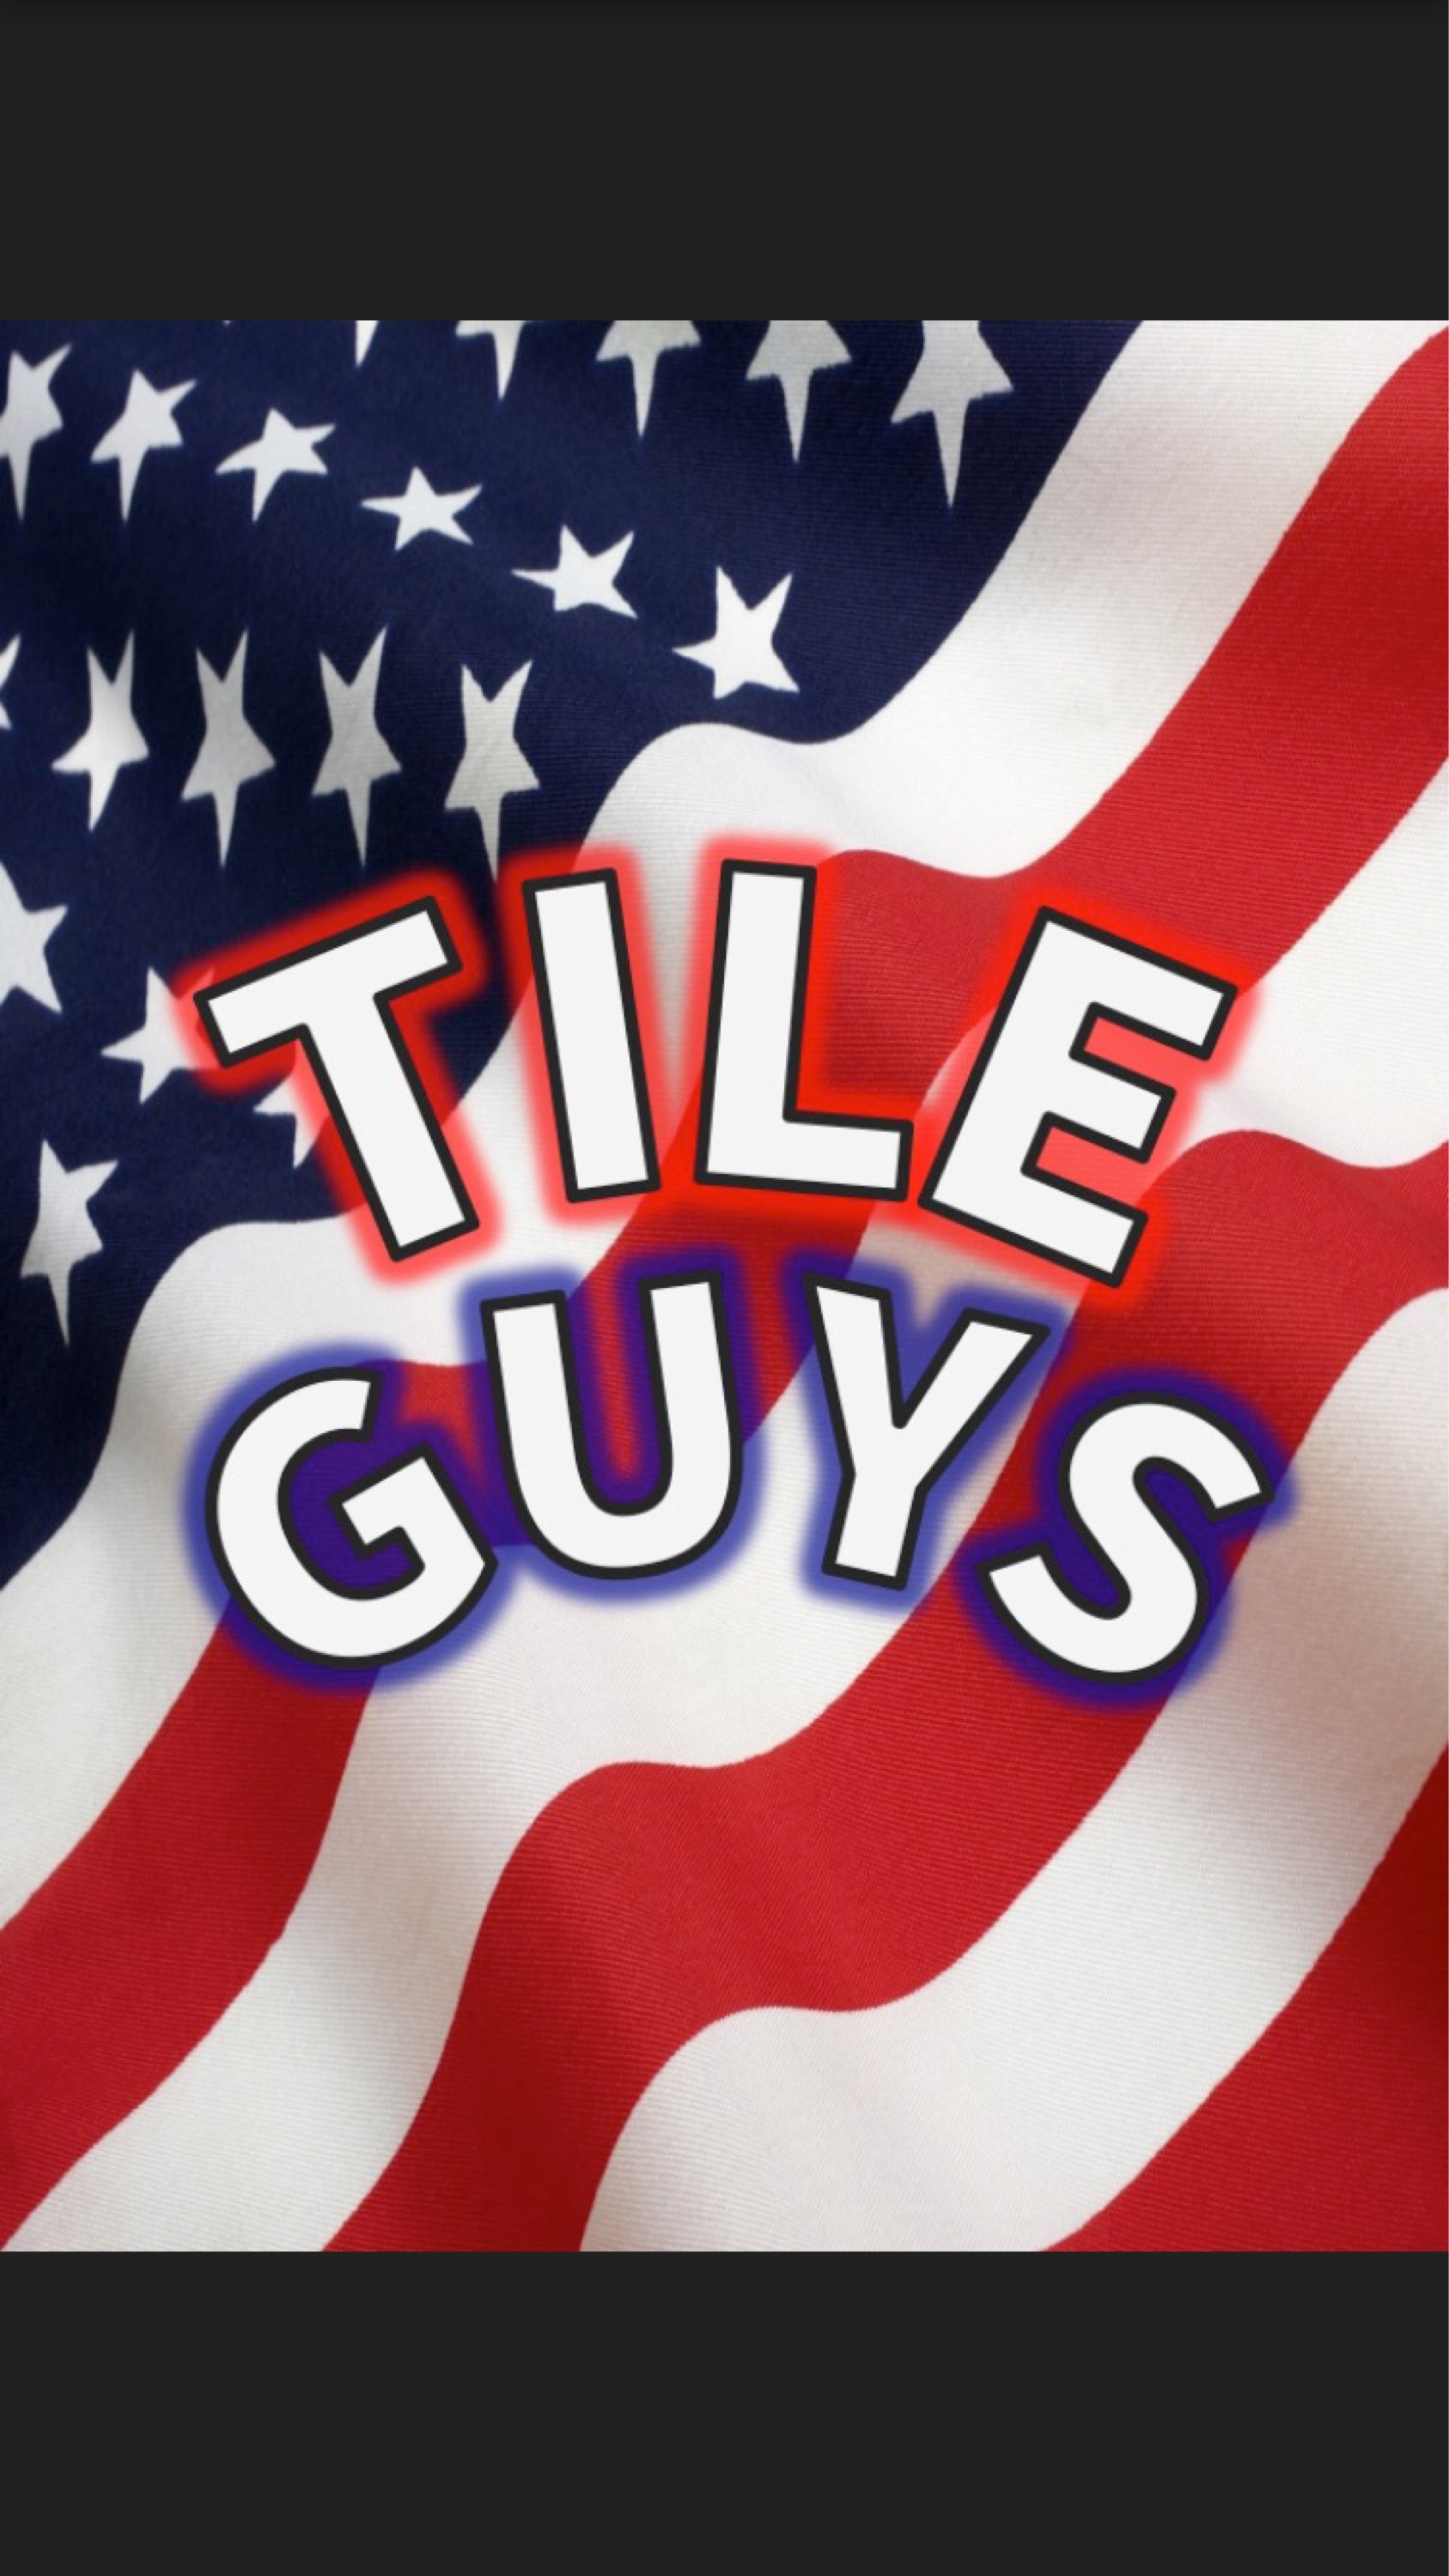 Tile Guys Logo